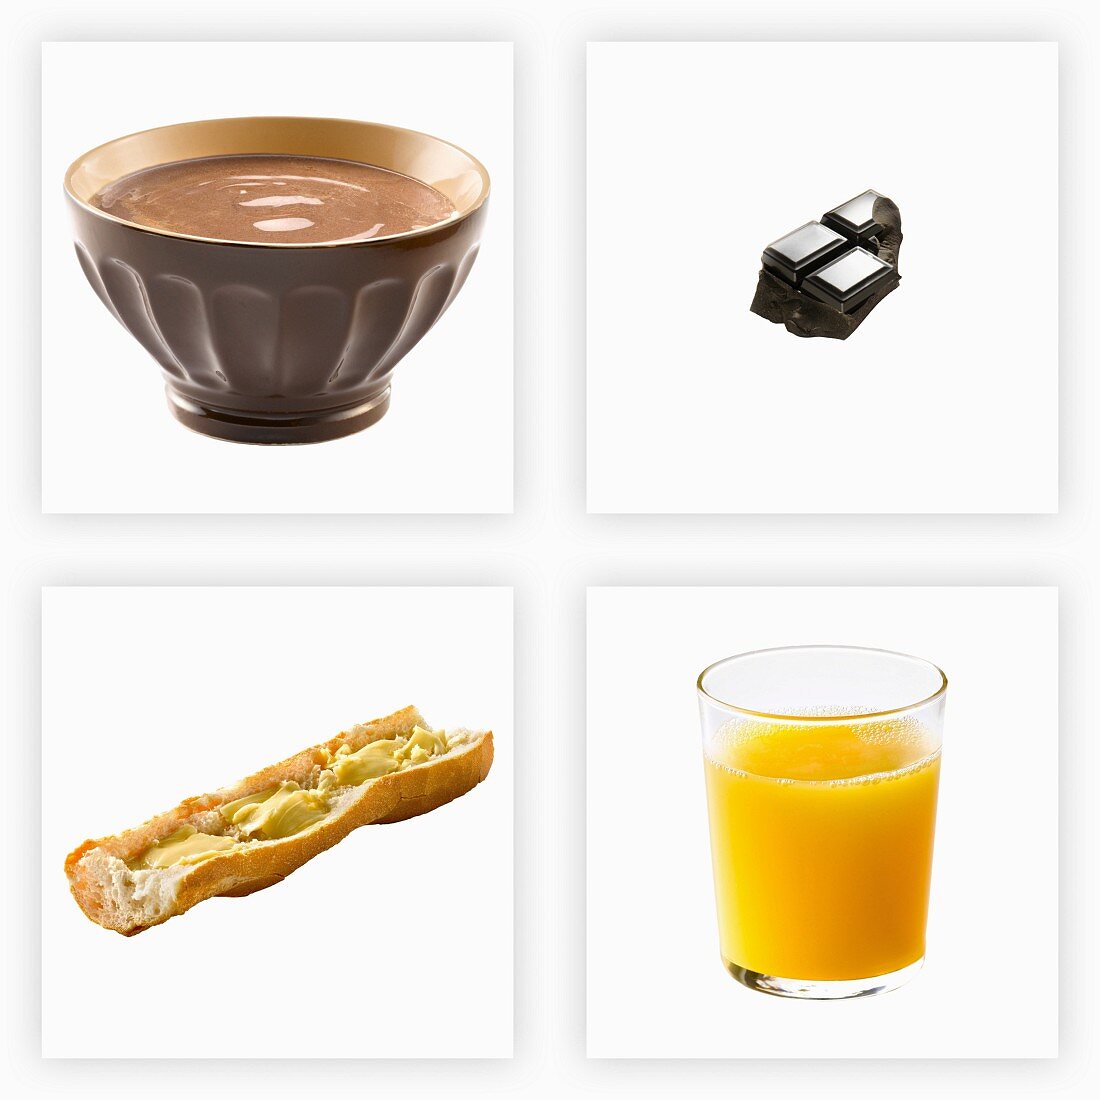 Frühstückszutaten (Kakao, Schokolade, Baguette, Orangensaft)